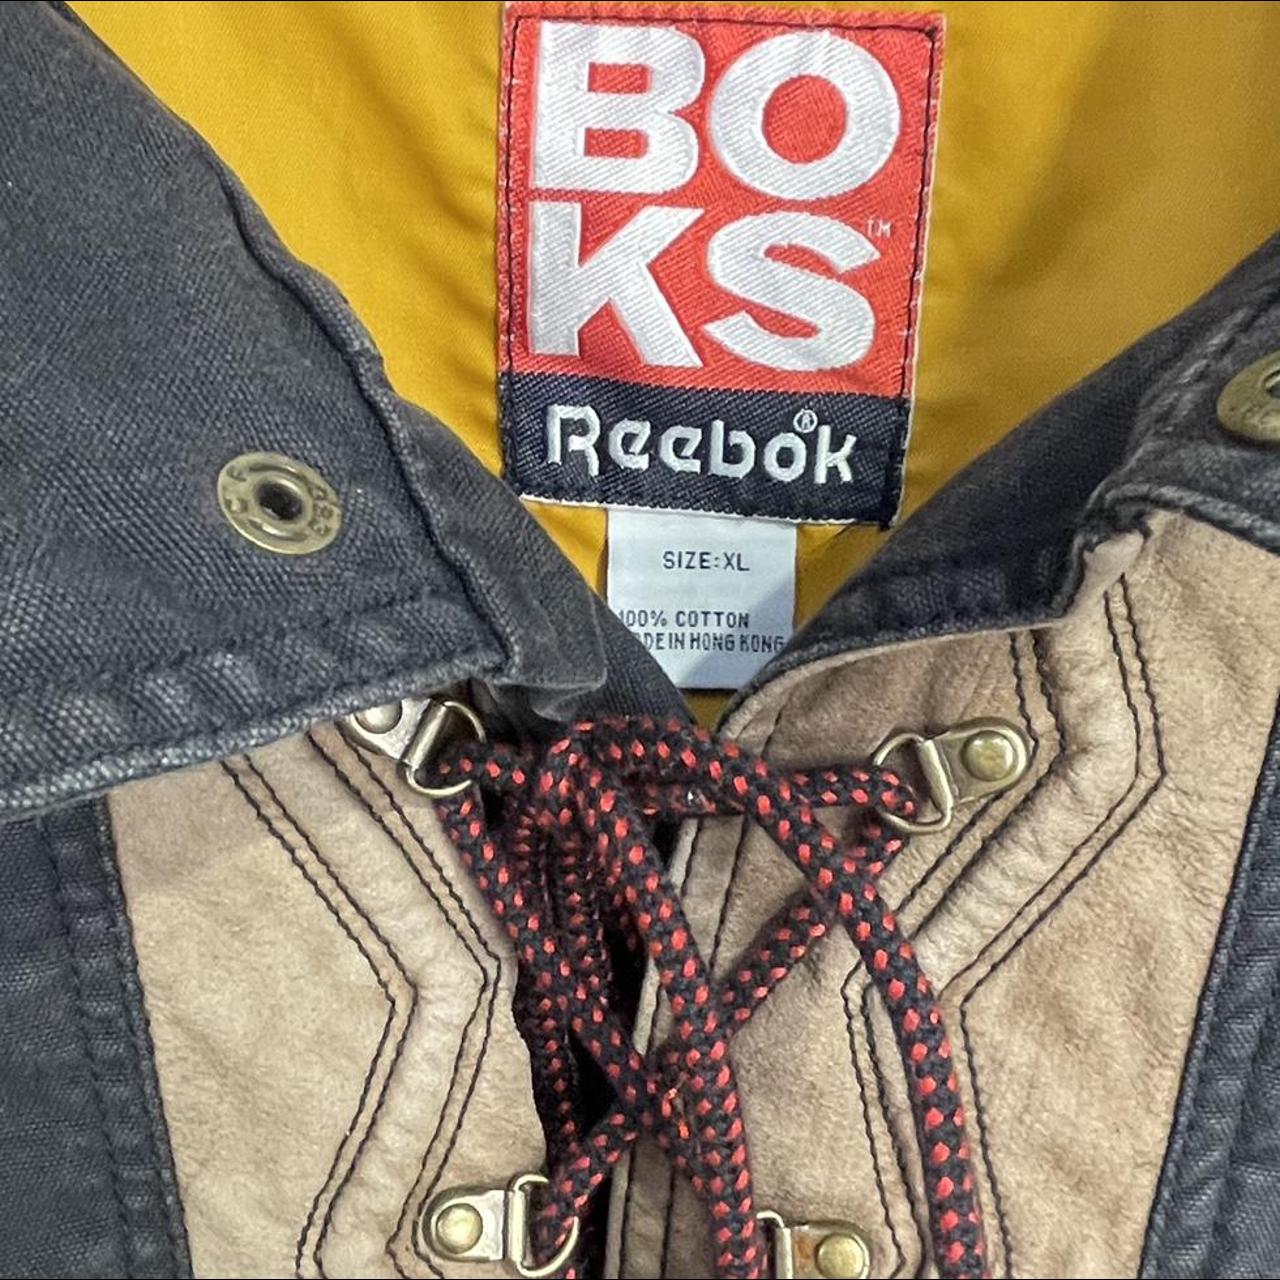 Product Image 4 - Vintage Denim BOKS Reebok Pullover/Poncho/Jacket/Jumper